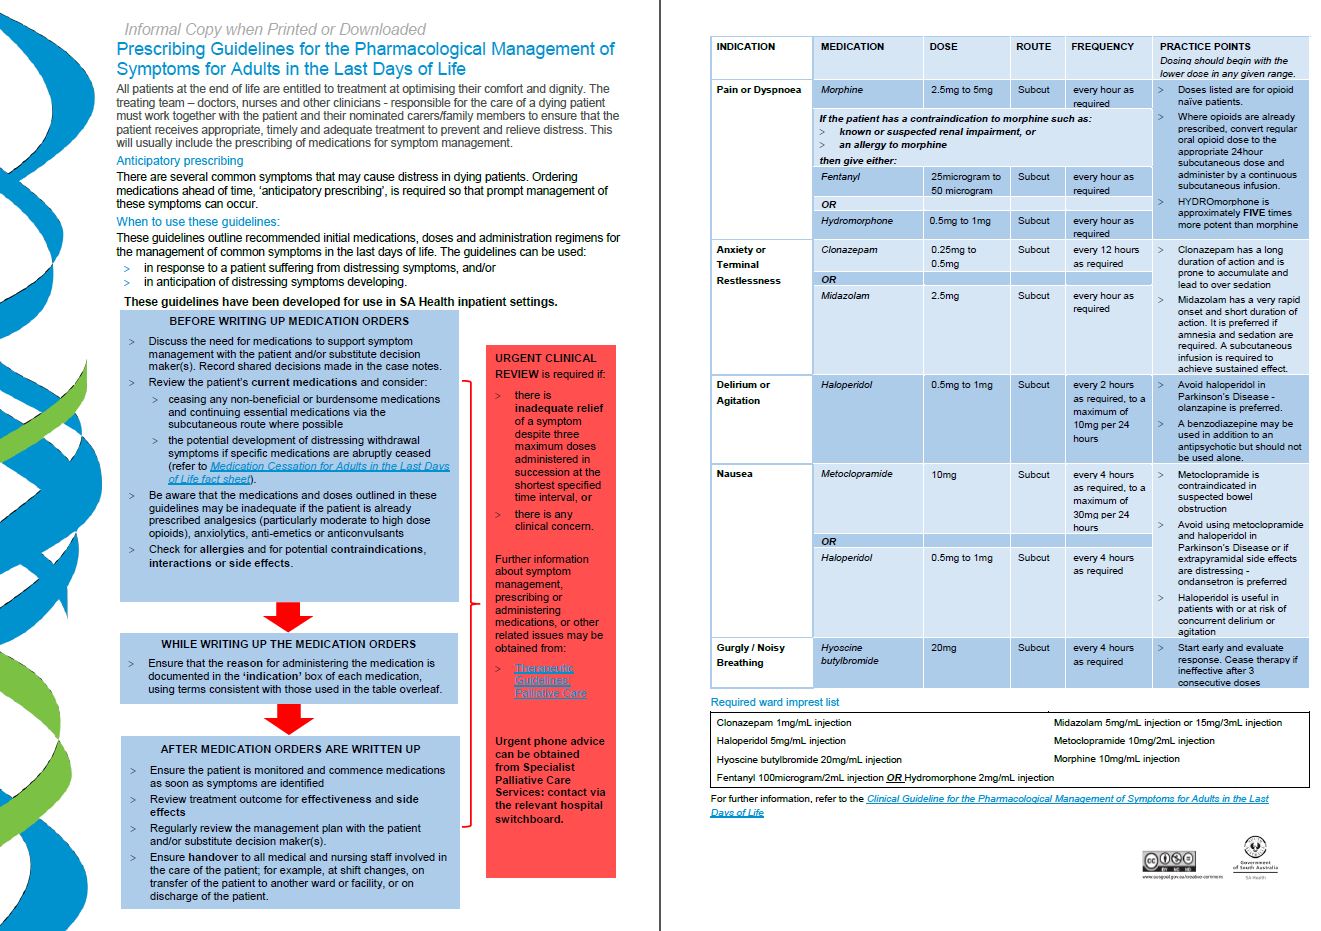 image of Prescribing guidelines handbook